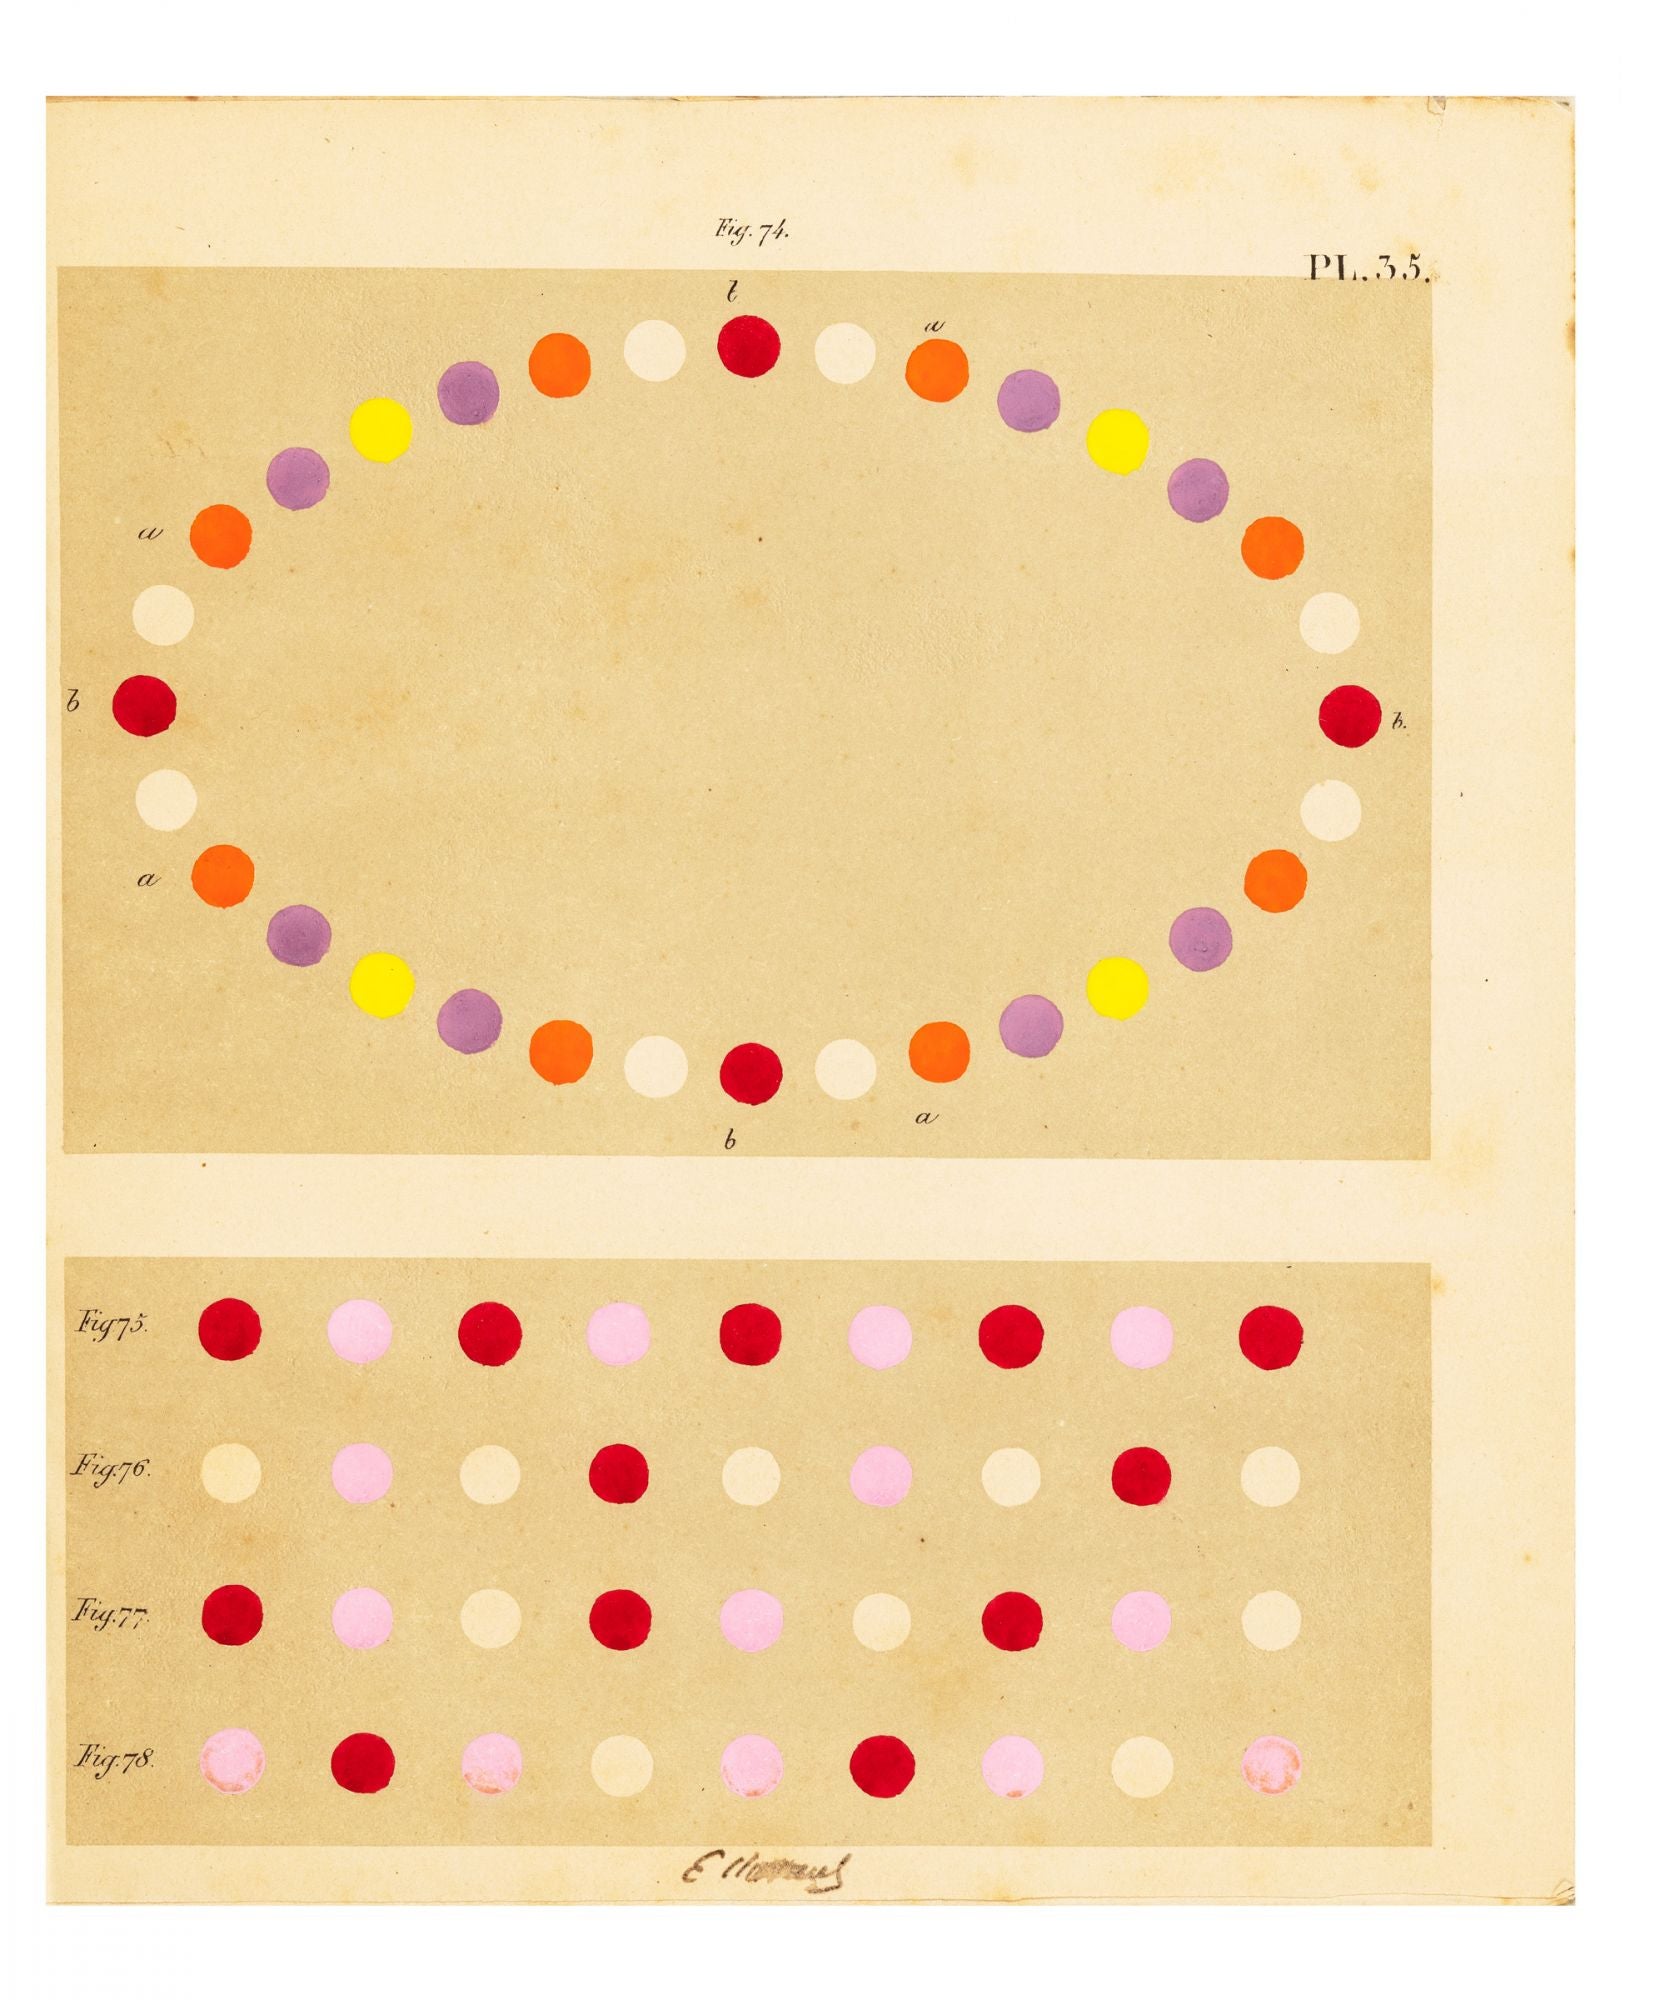 Michel Eugène Chevreul, De la loi du contraste simultané des couleurs, et  de l'assortiment des objets colorés, considéré d'après cette loi